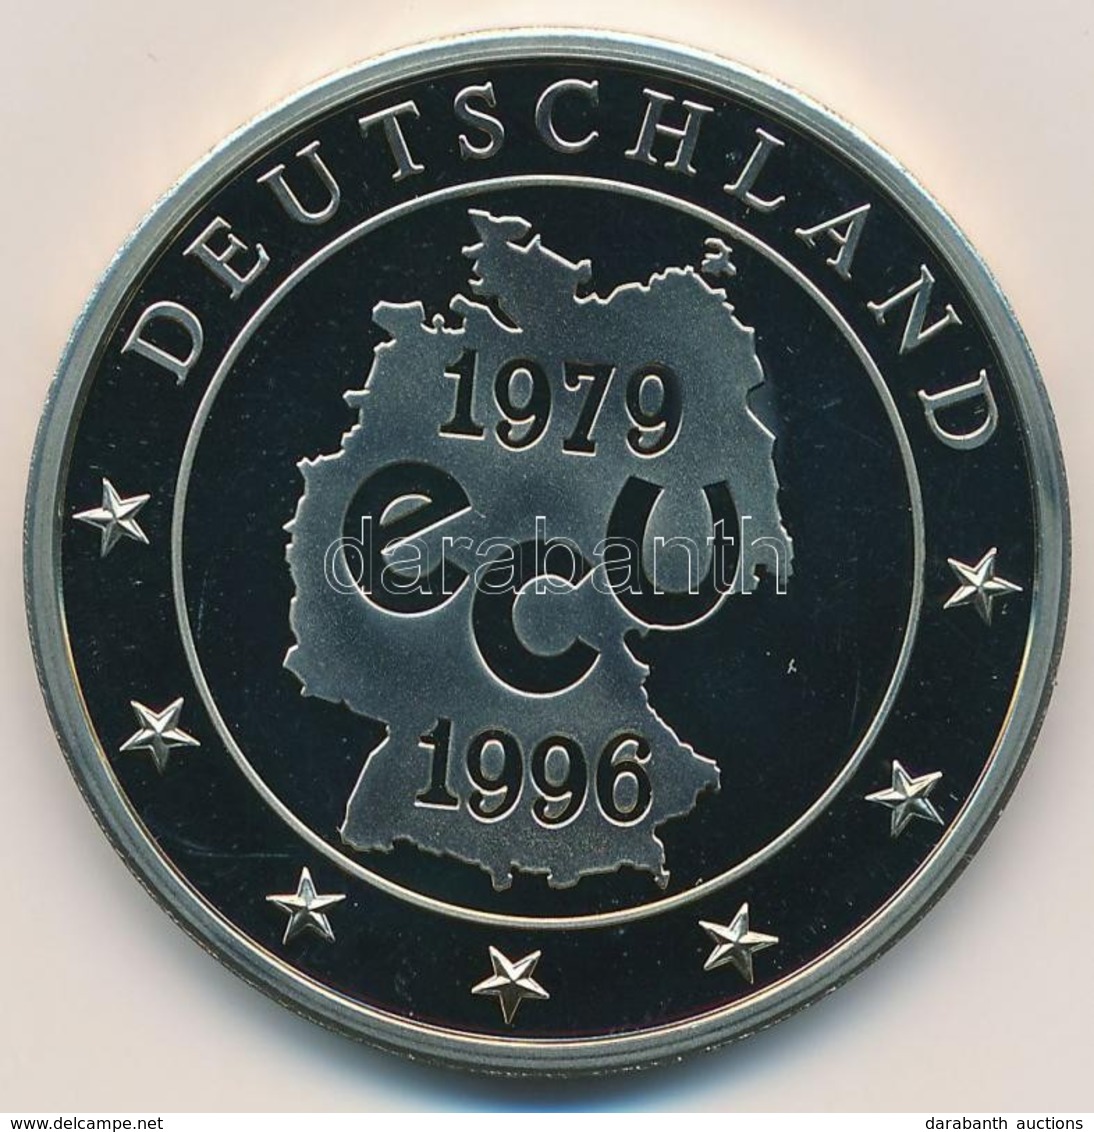 Németország 1996. 'Az Utolsó Német ECU' Cu-Ni Emlékérem Német Nyelvű Tanúsítvánnyal (27,7g/40mm) T:1,1-
Germany 1996. 'D - Ohne Zuordnung